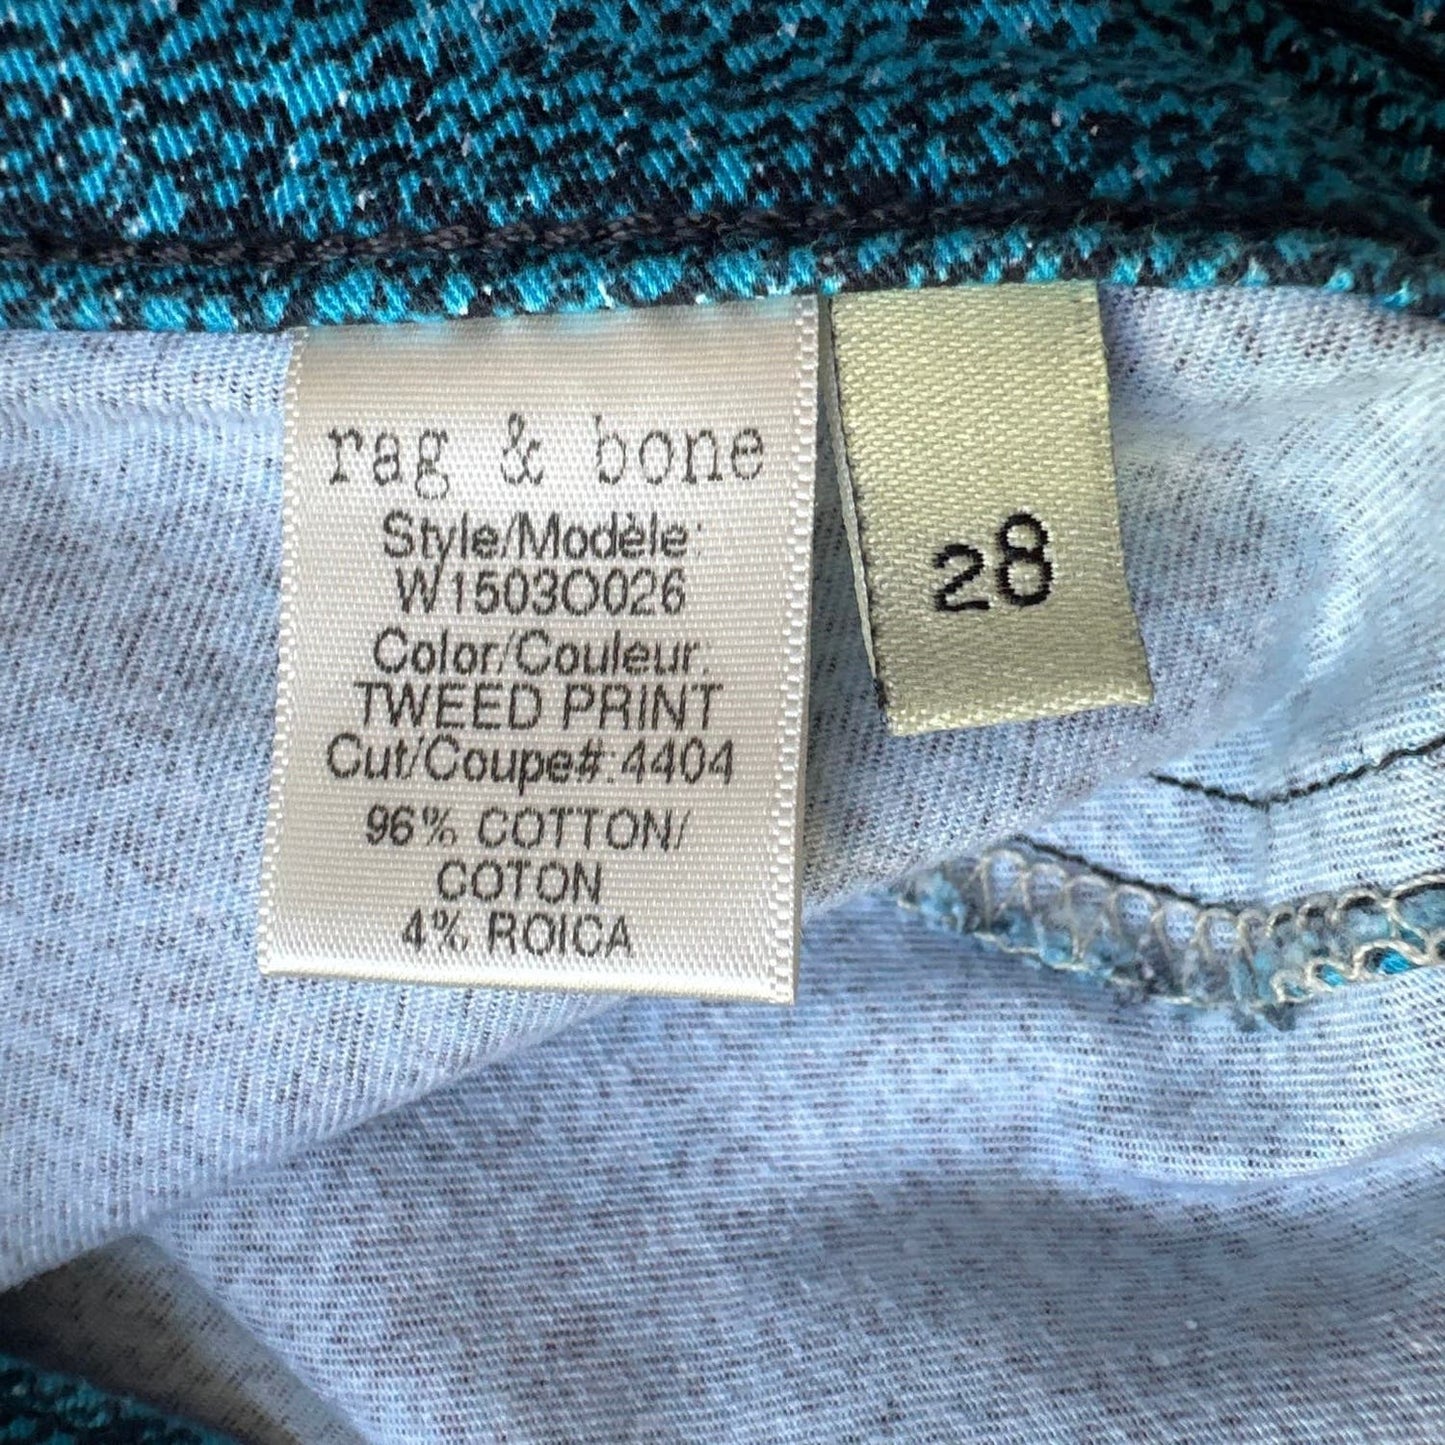 Rag & Bone Tweed Print Teal Skinny Leggin Pants Sz 28